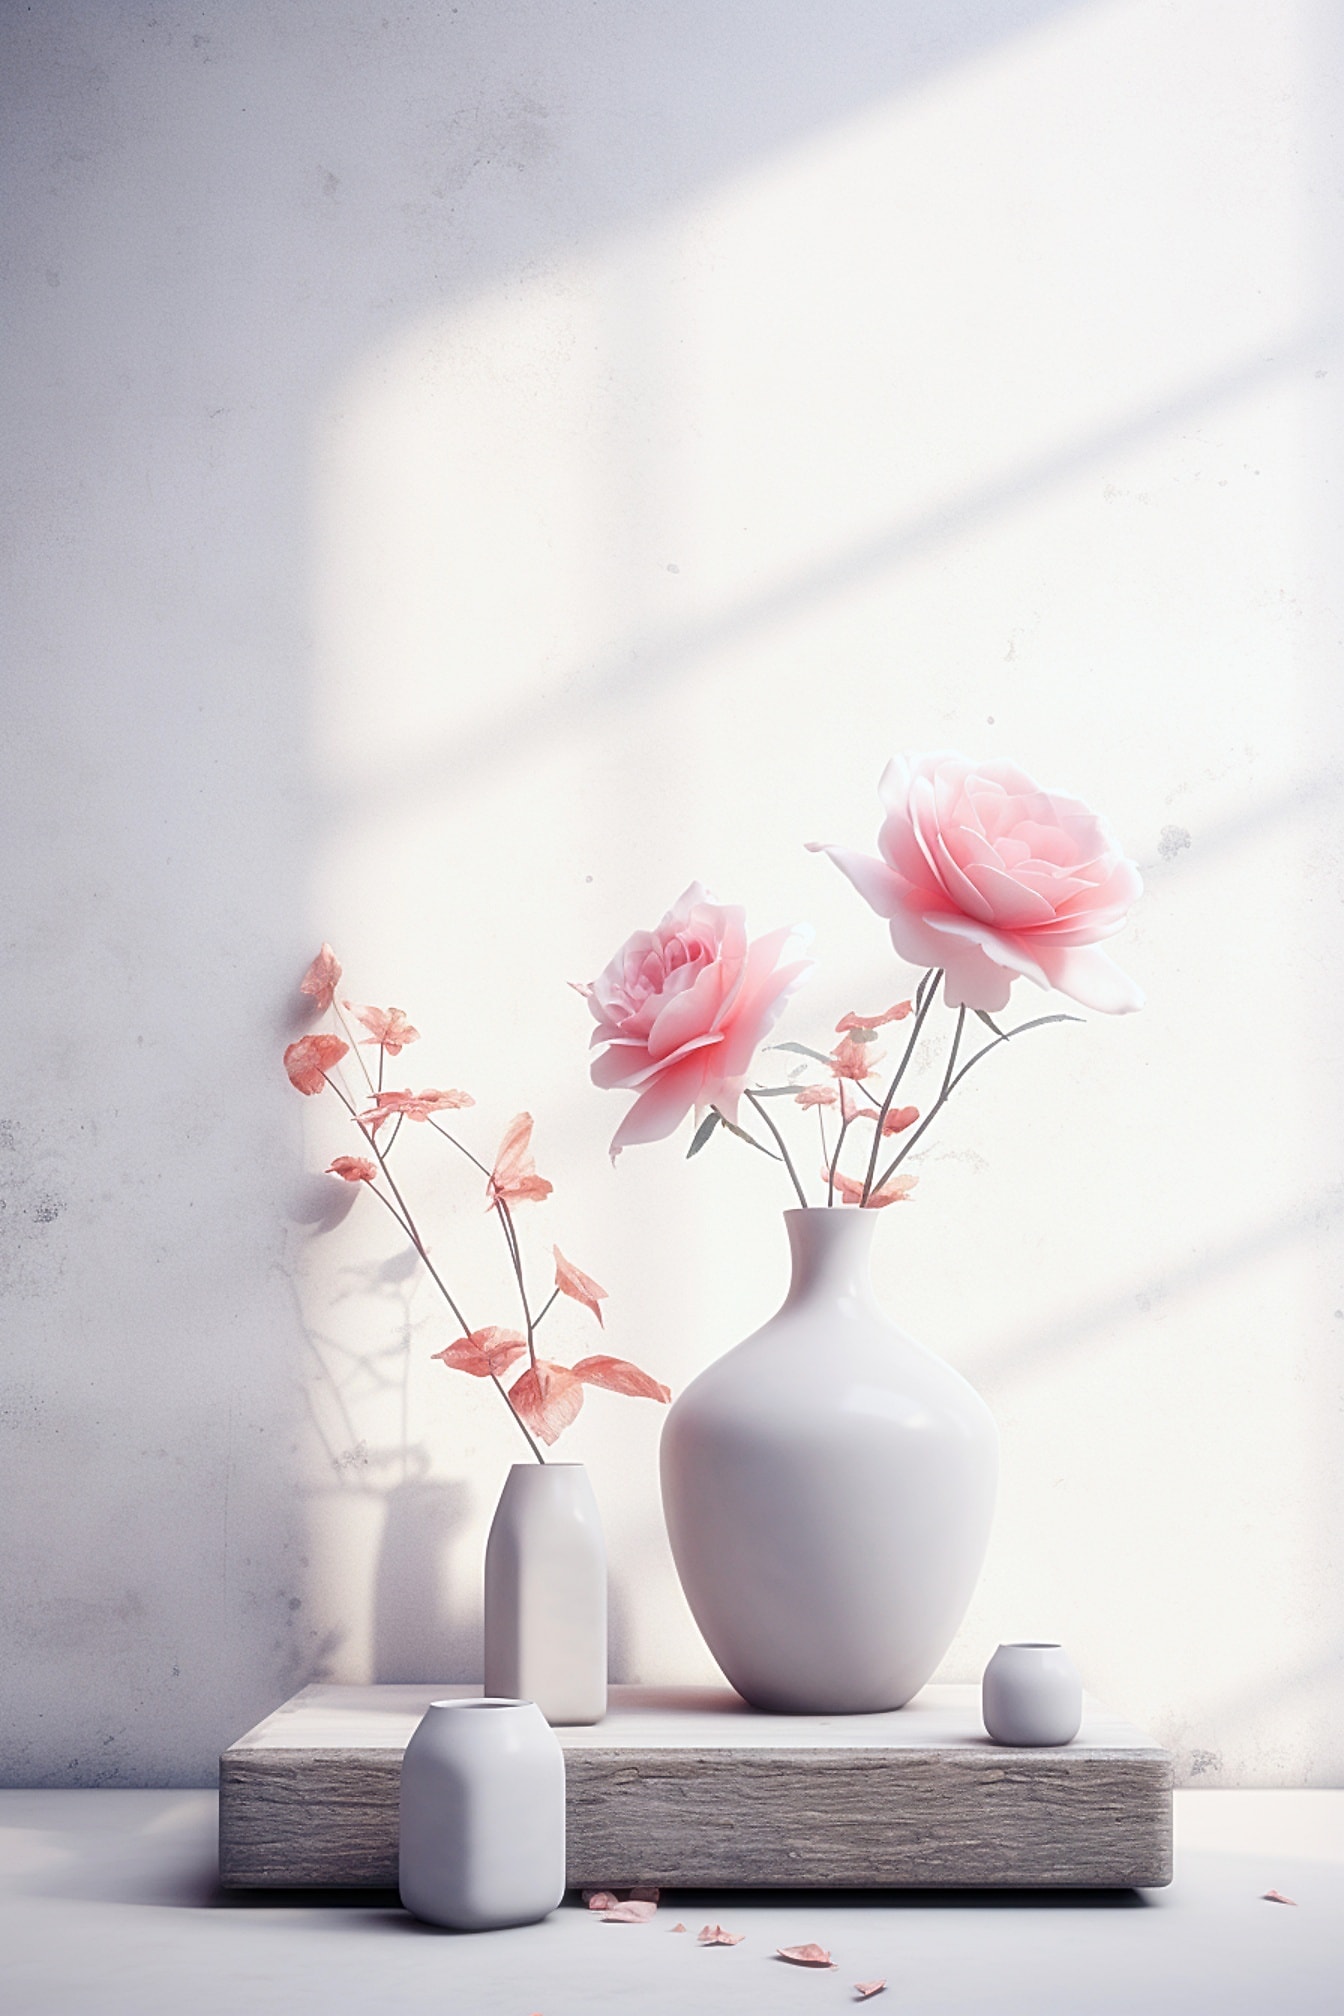 ピンクがかったバラの花が咲いた白い陶器の花瓶